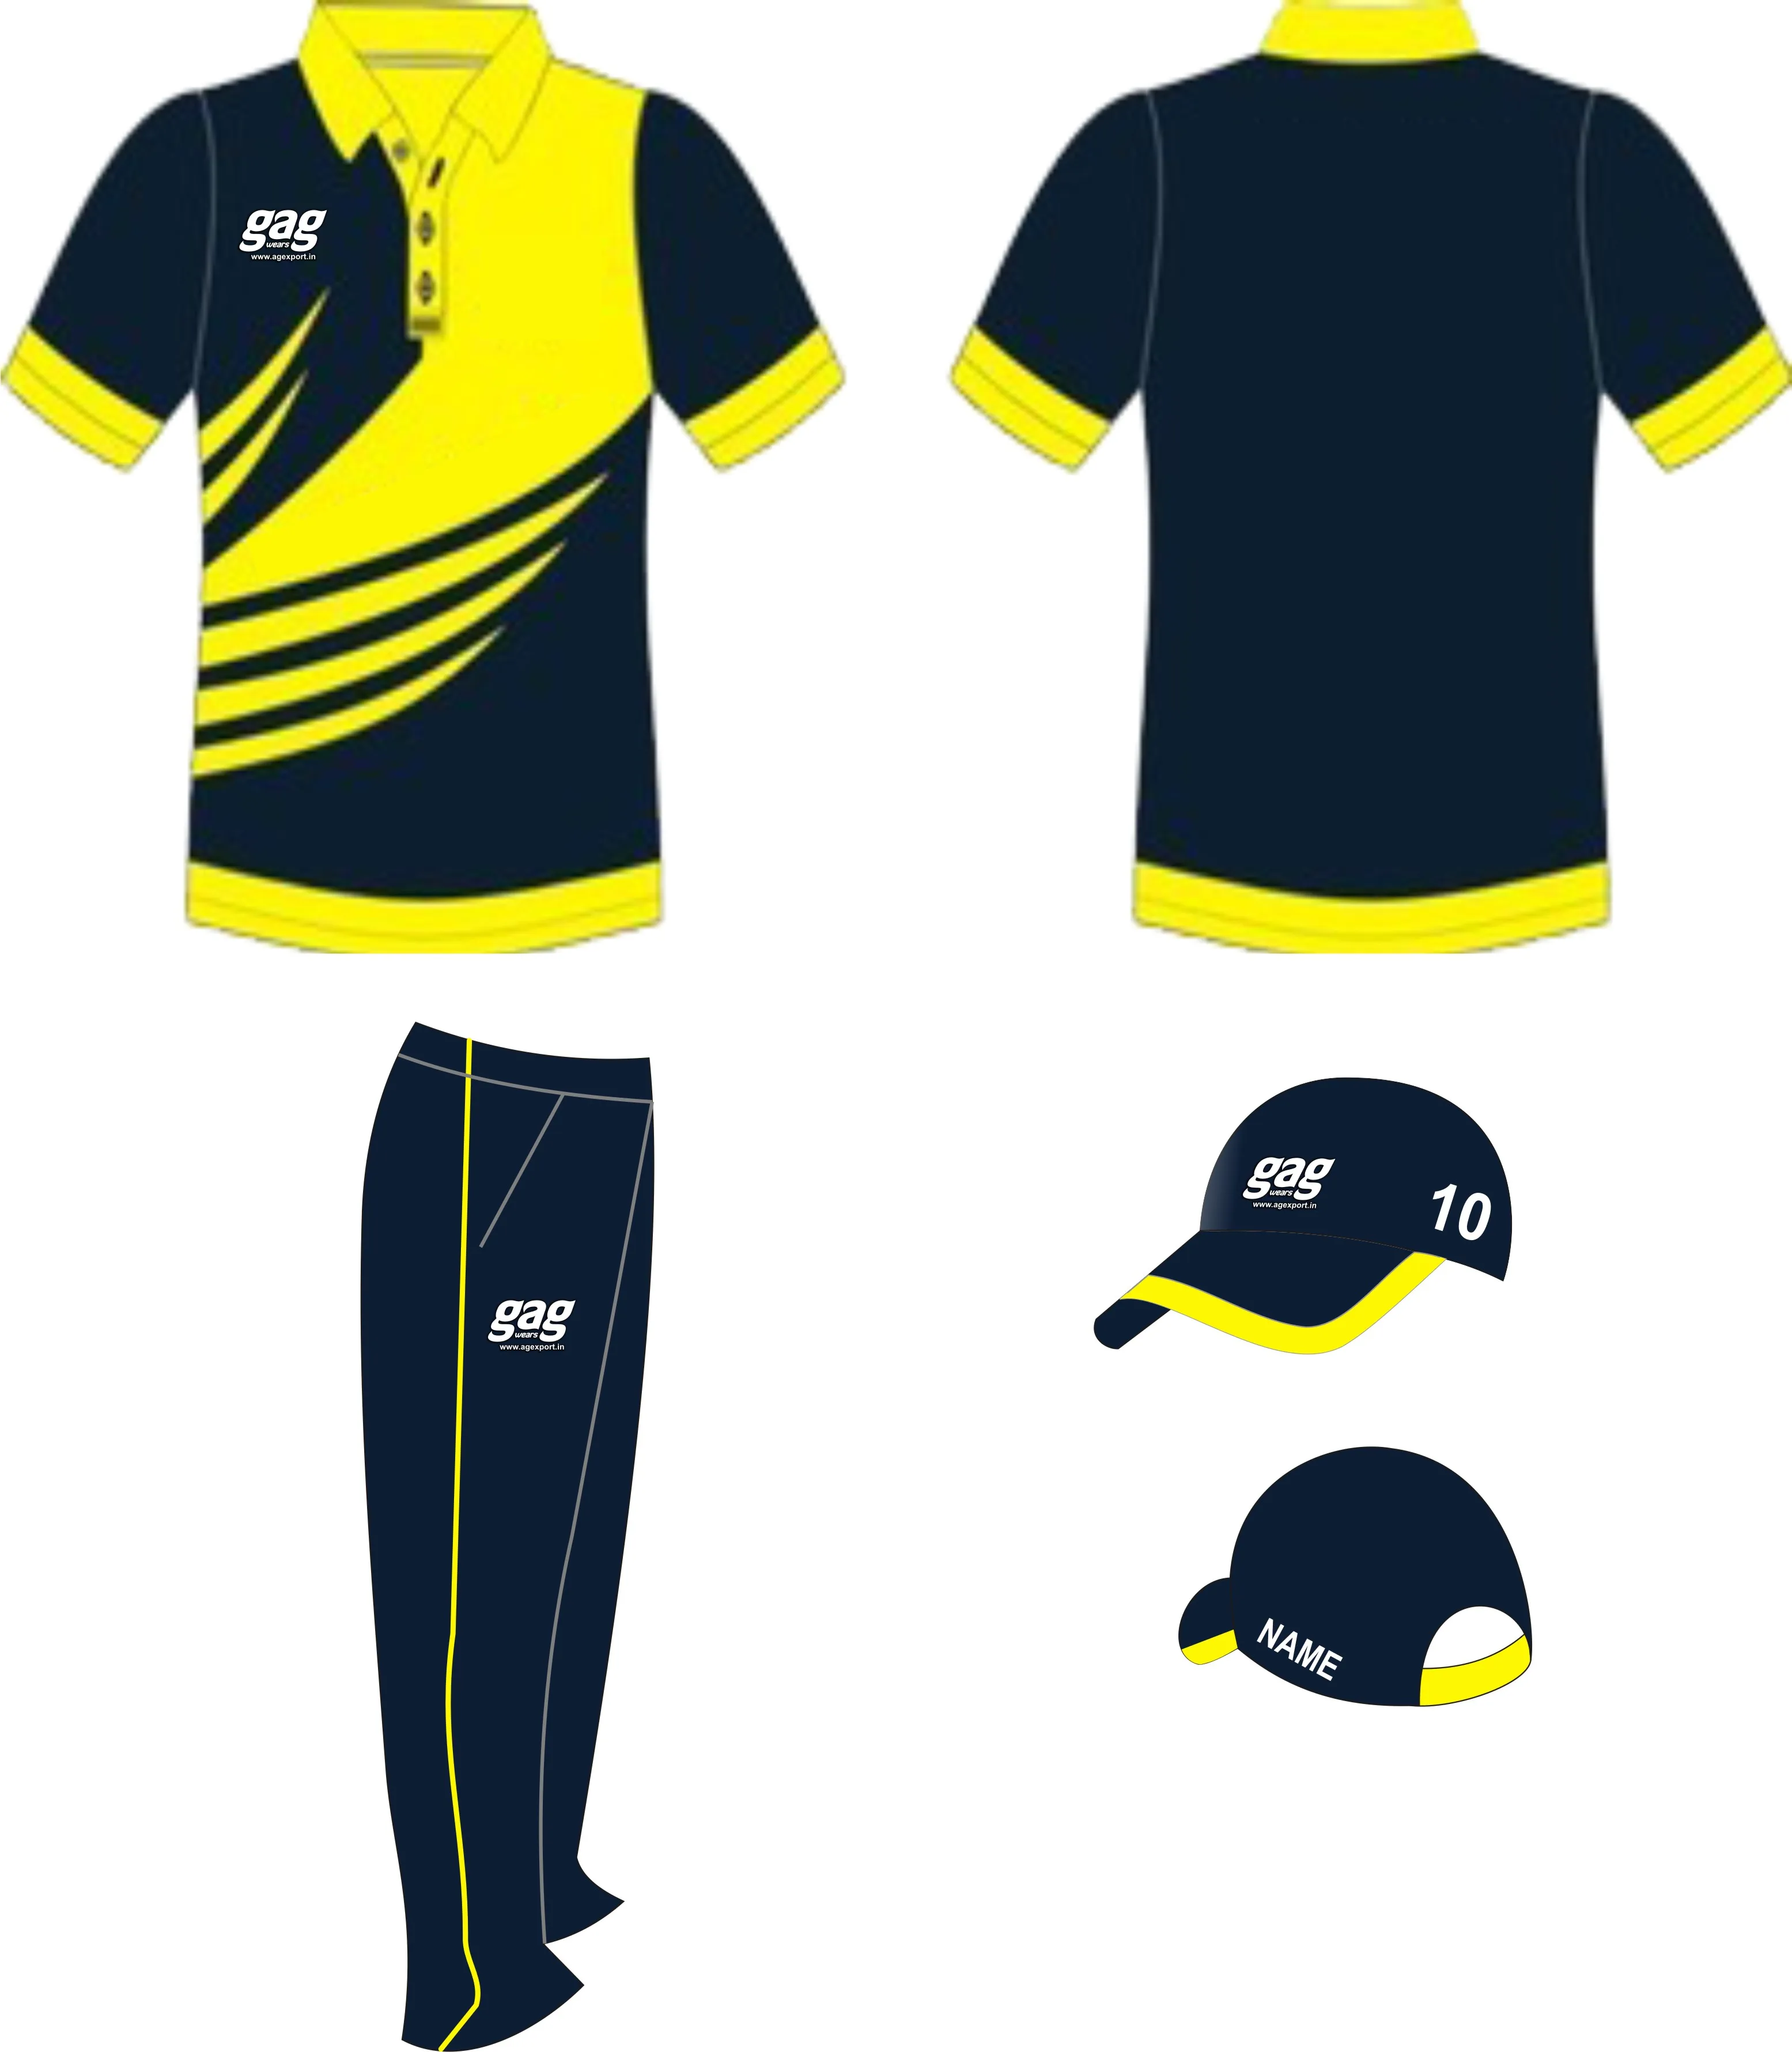 cricket shirt design 2020